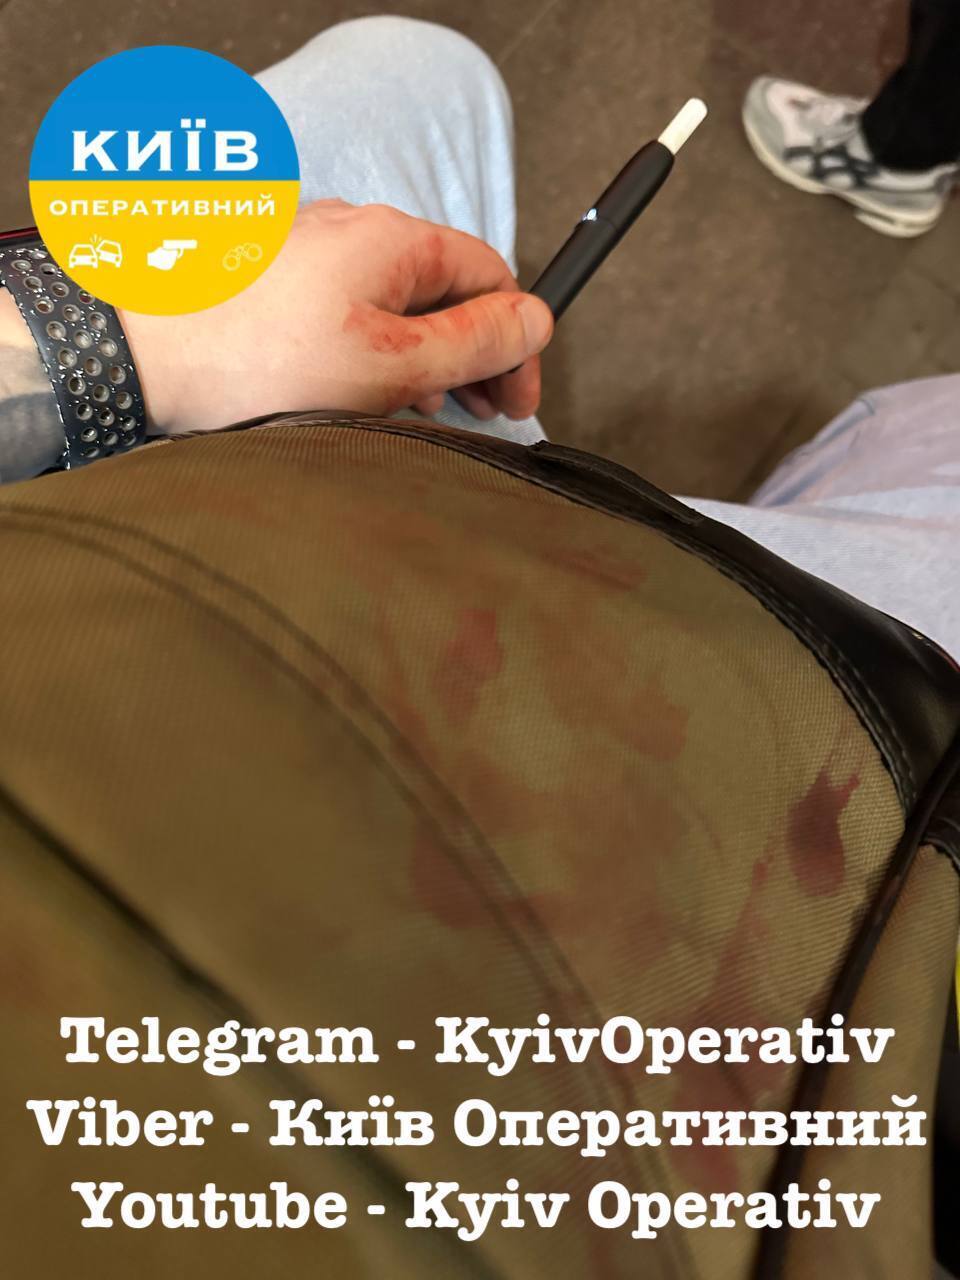 У Києві чоловік розбив скло фунікулера і порізав горло підлітку: всі деталі, фото і відео 18+